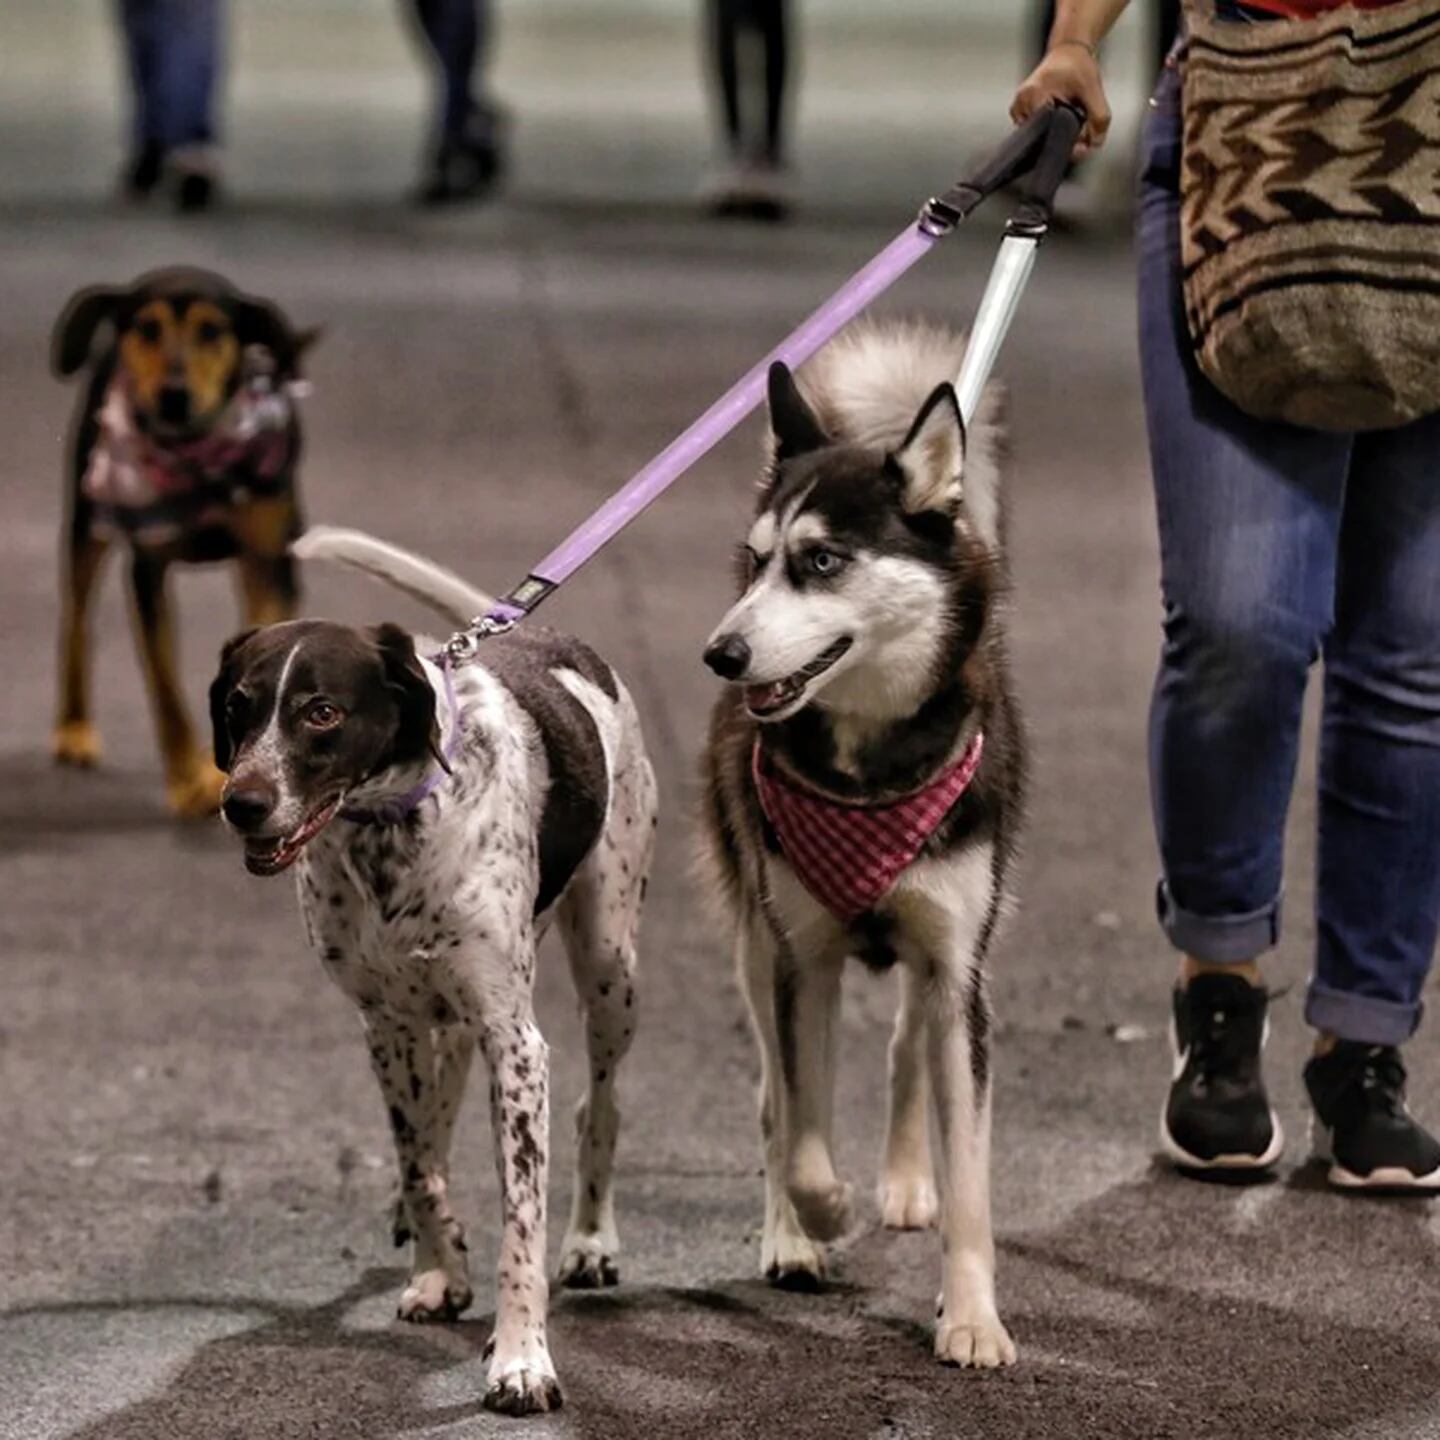 El parque Chicó Norte estrena espacio para bienestar canino